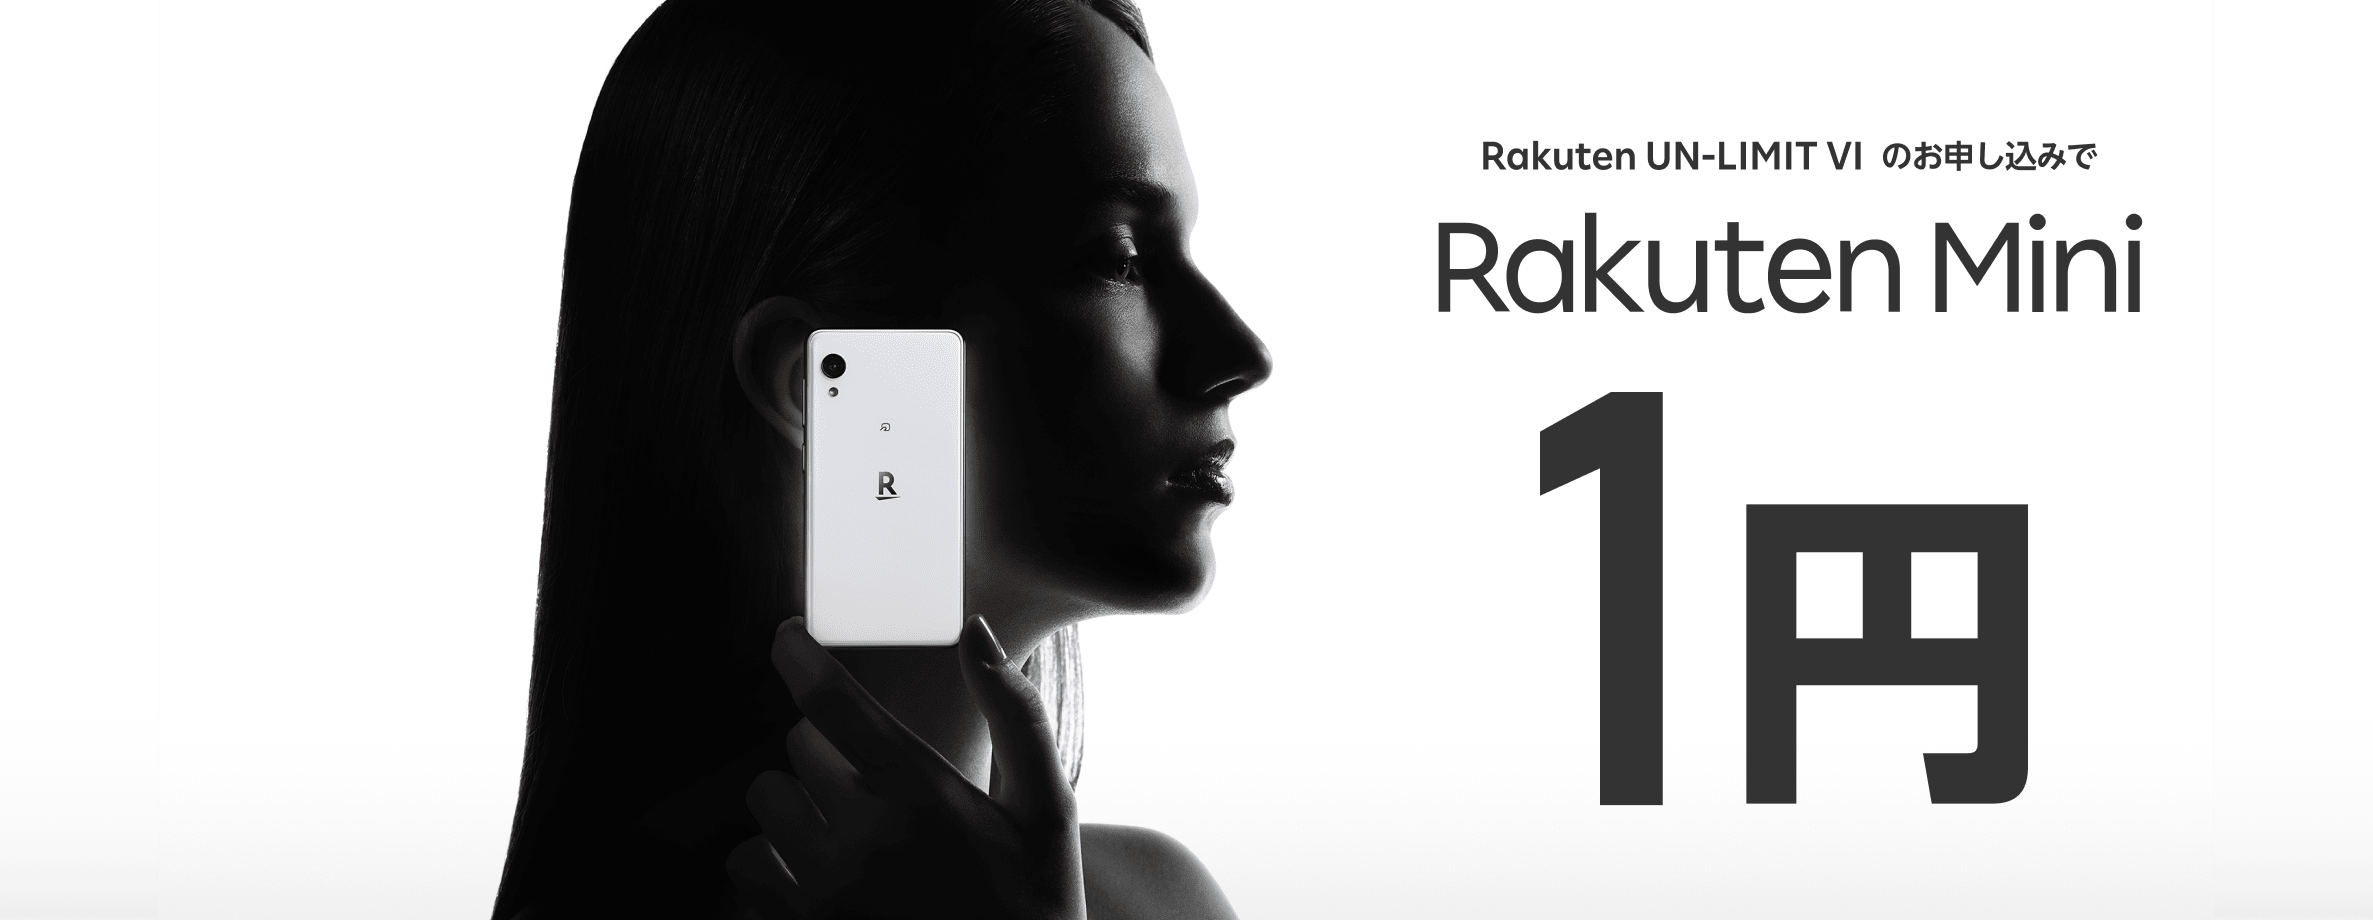 Rakuten Mini本体価格1円キャンペーン | キャンペーン・特典 | 楽天モバイル